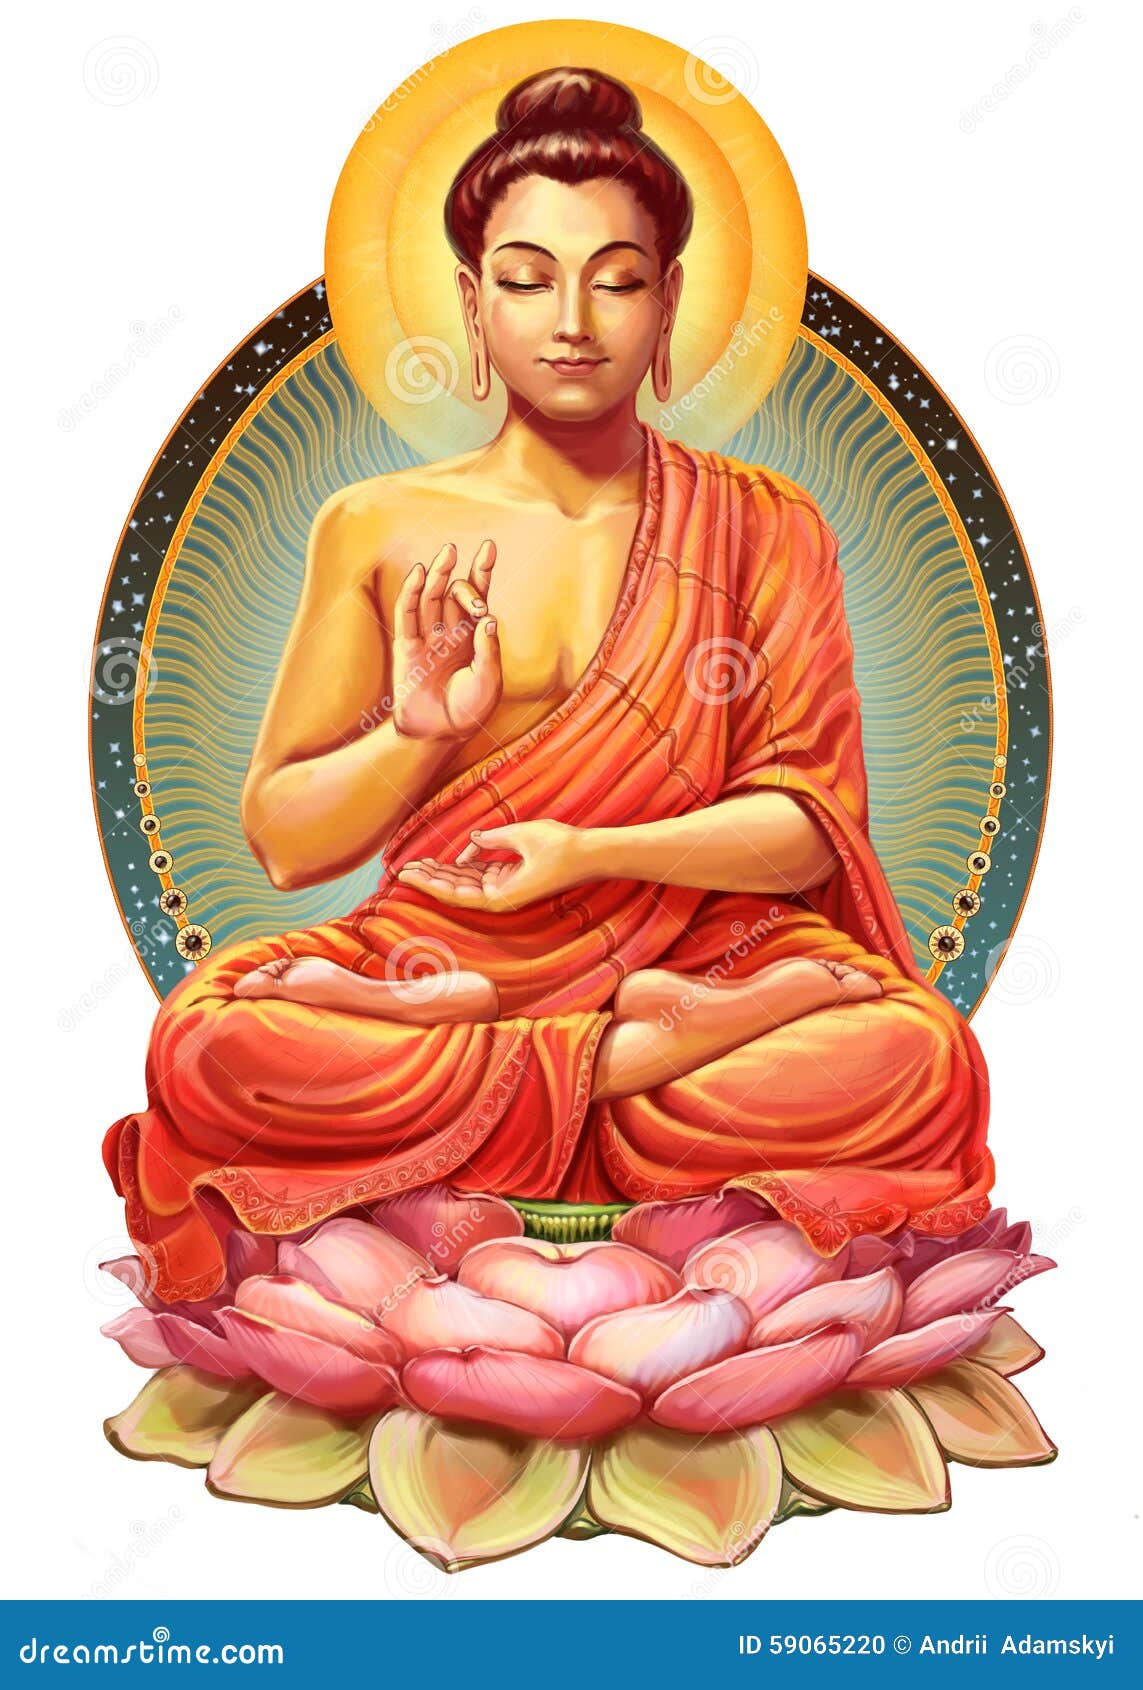 Gautama Buddha Portrait Greeting Card by Asp Arts